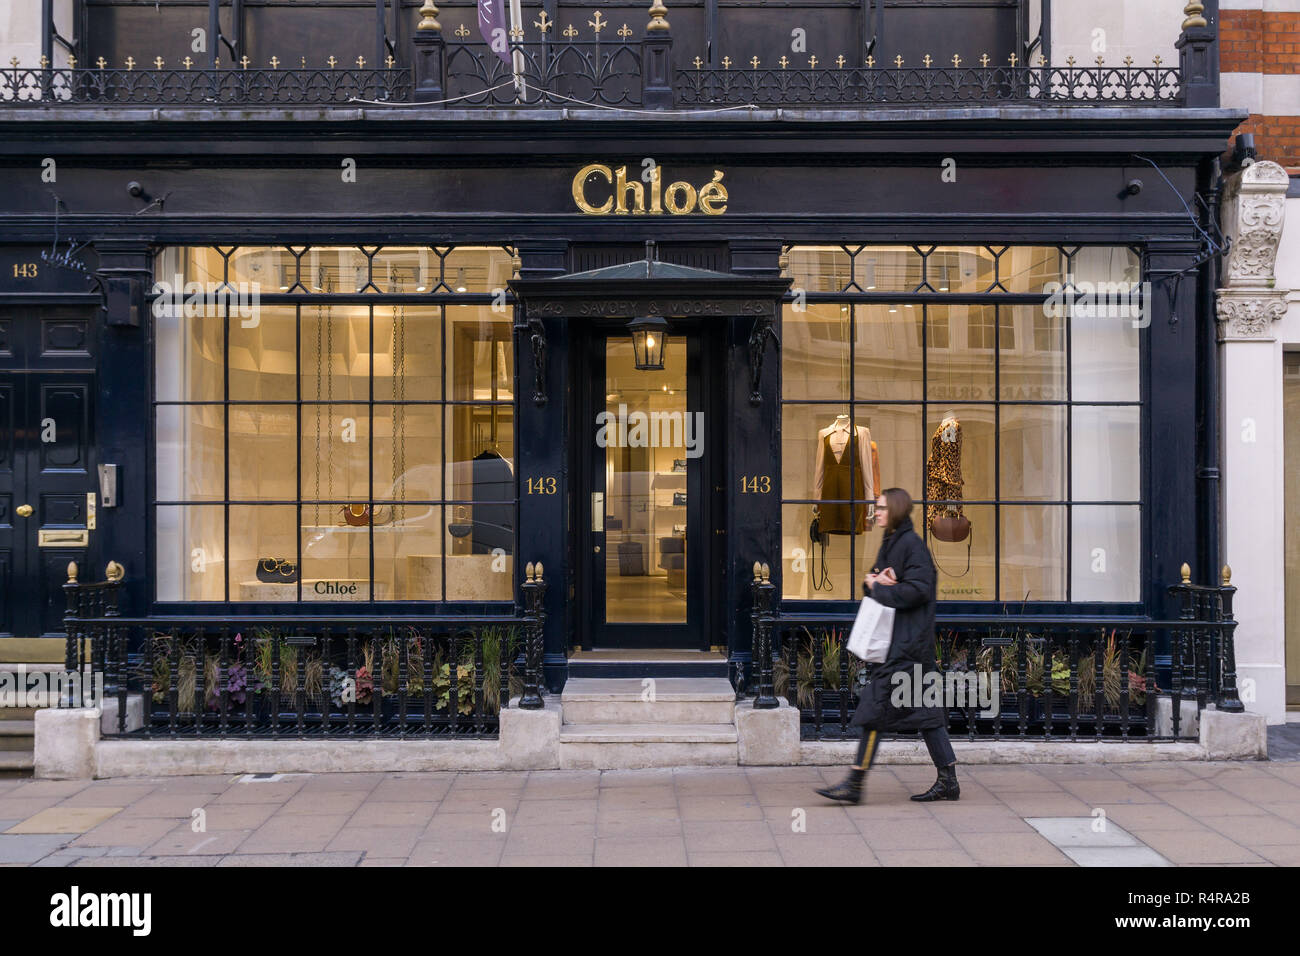 El Chloe Tienda en Mayfair, Londres Foto de stock